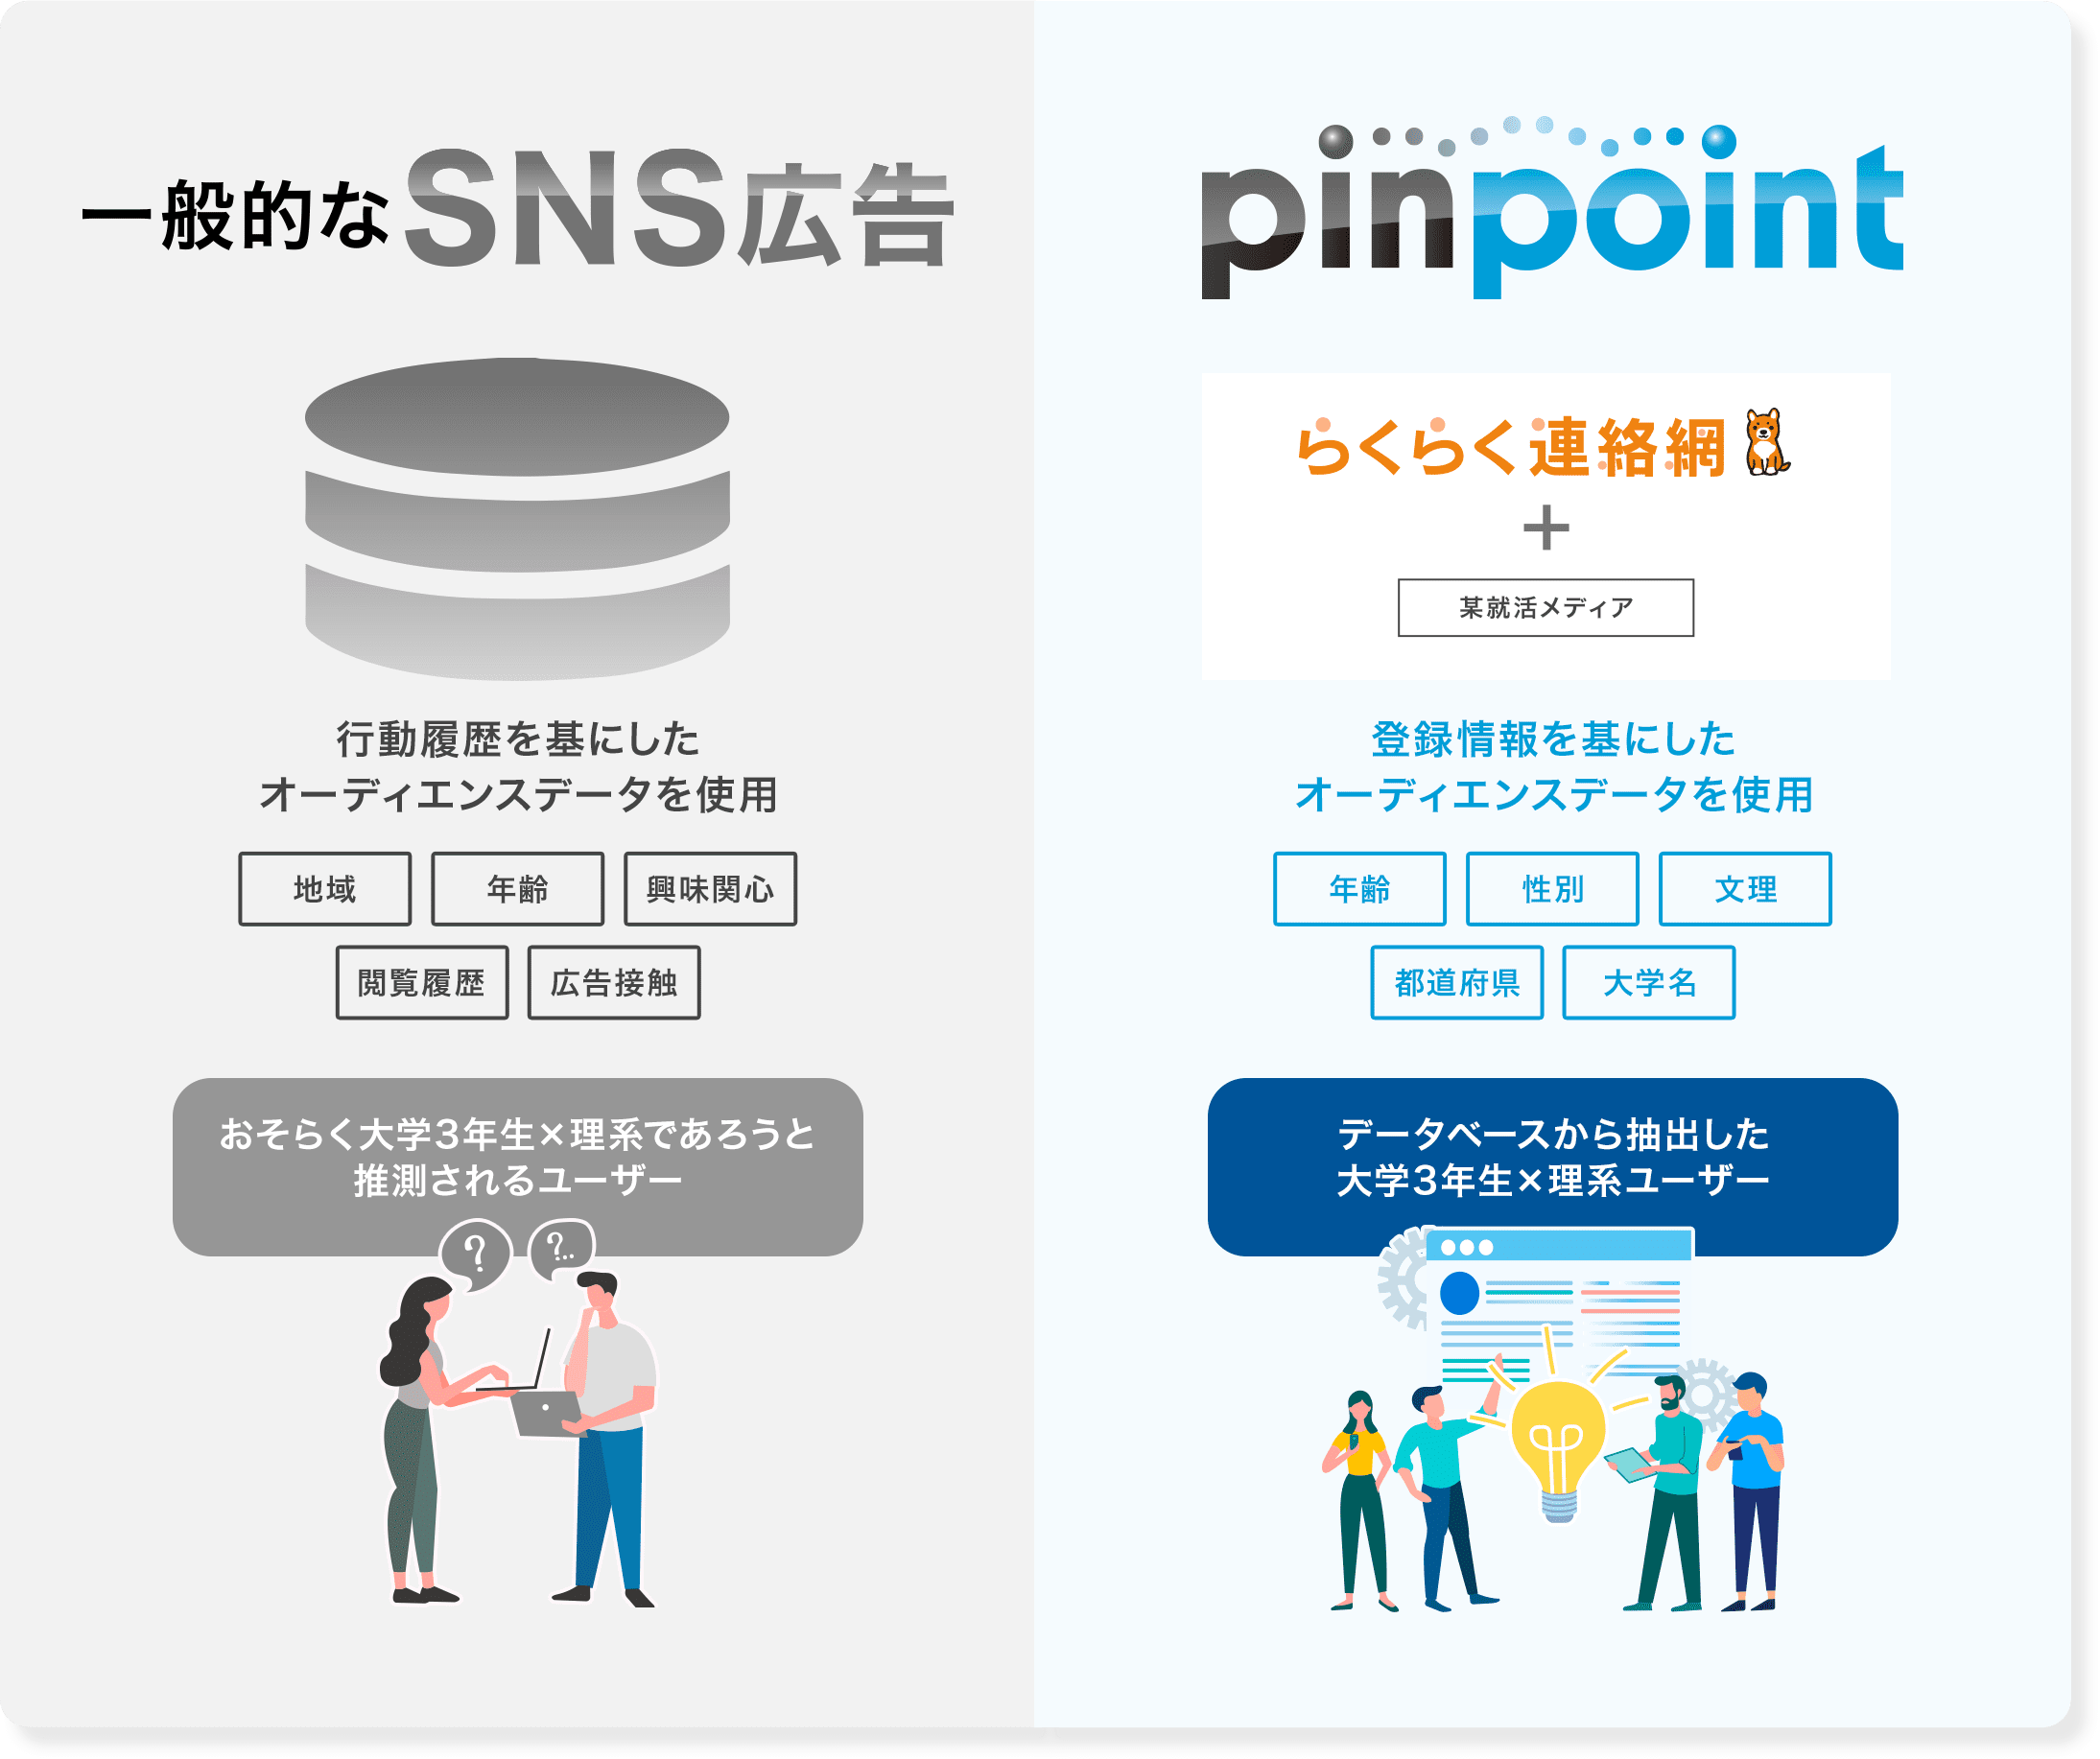 一般的なSNS広告とpinpointの活用データの違い